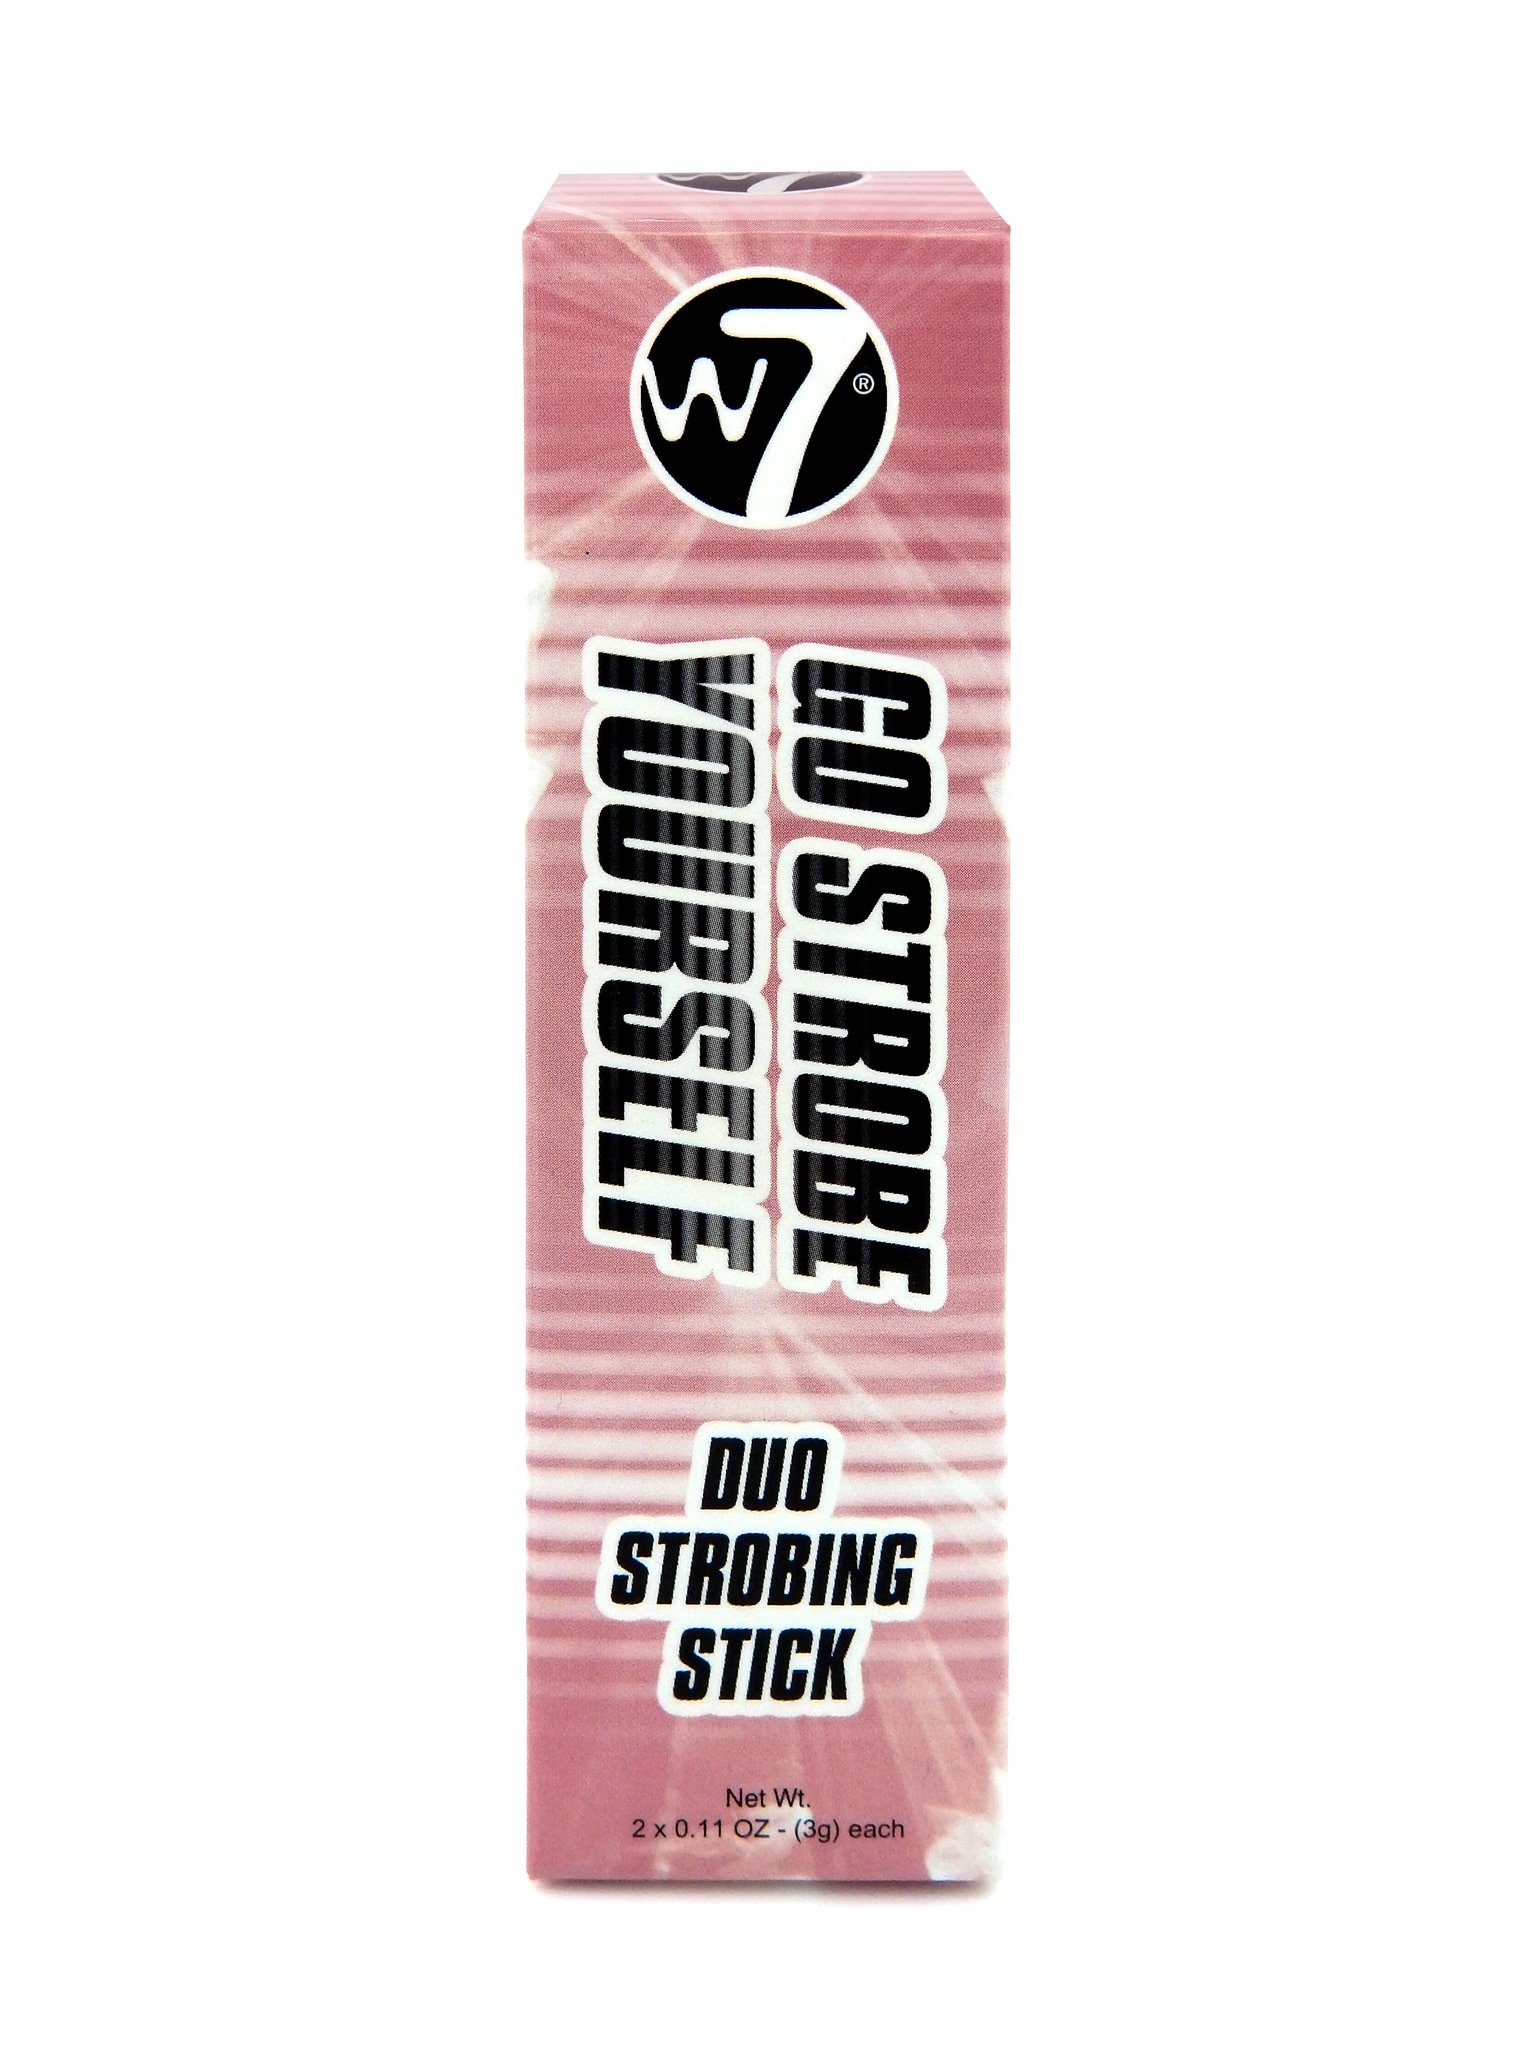 W7 Go strobe yourself duo strobing stick